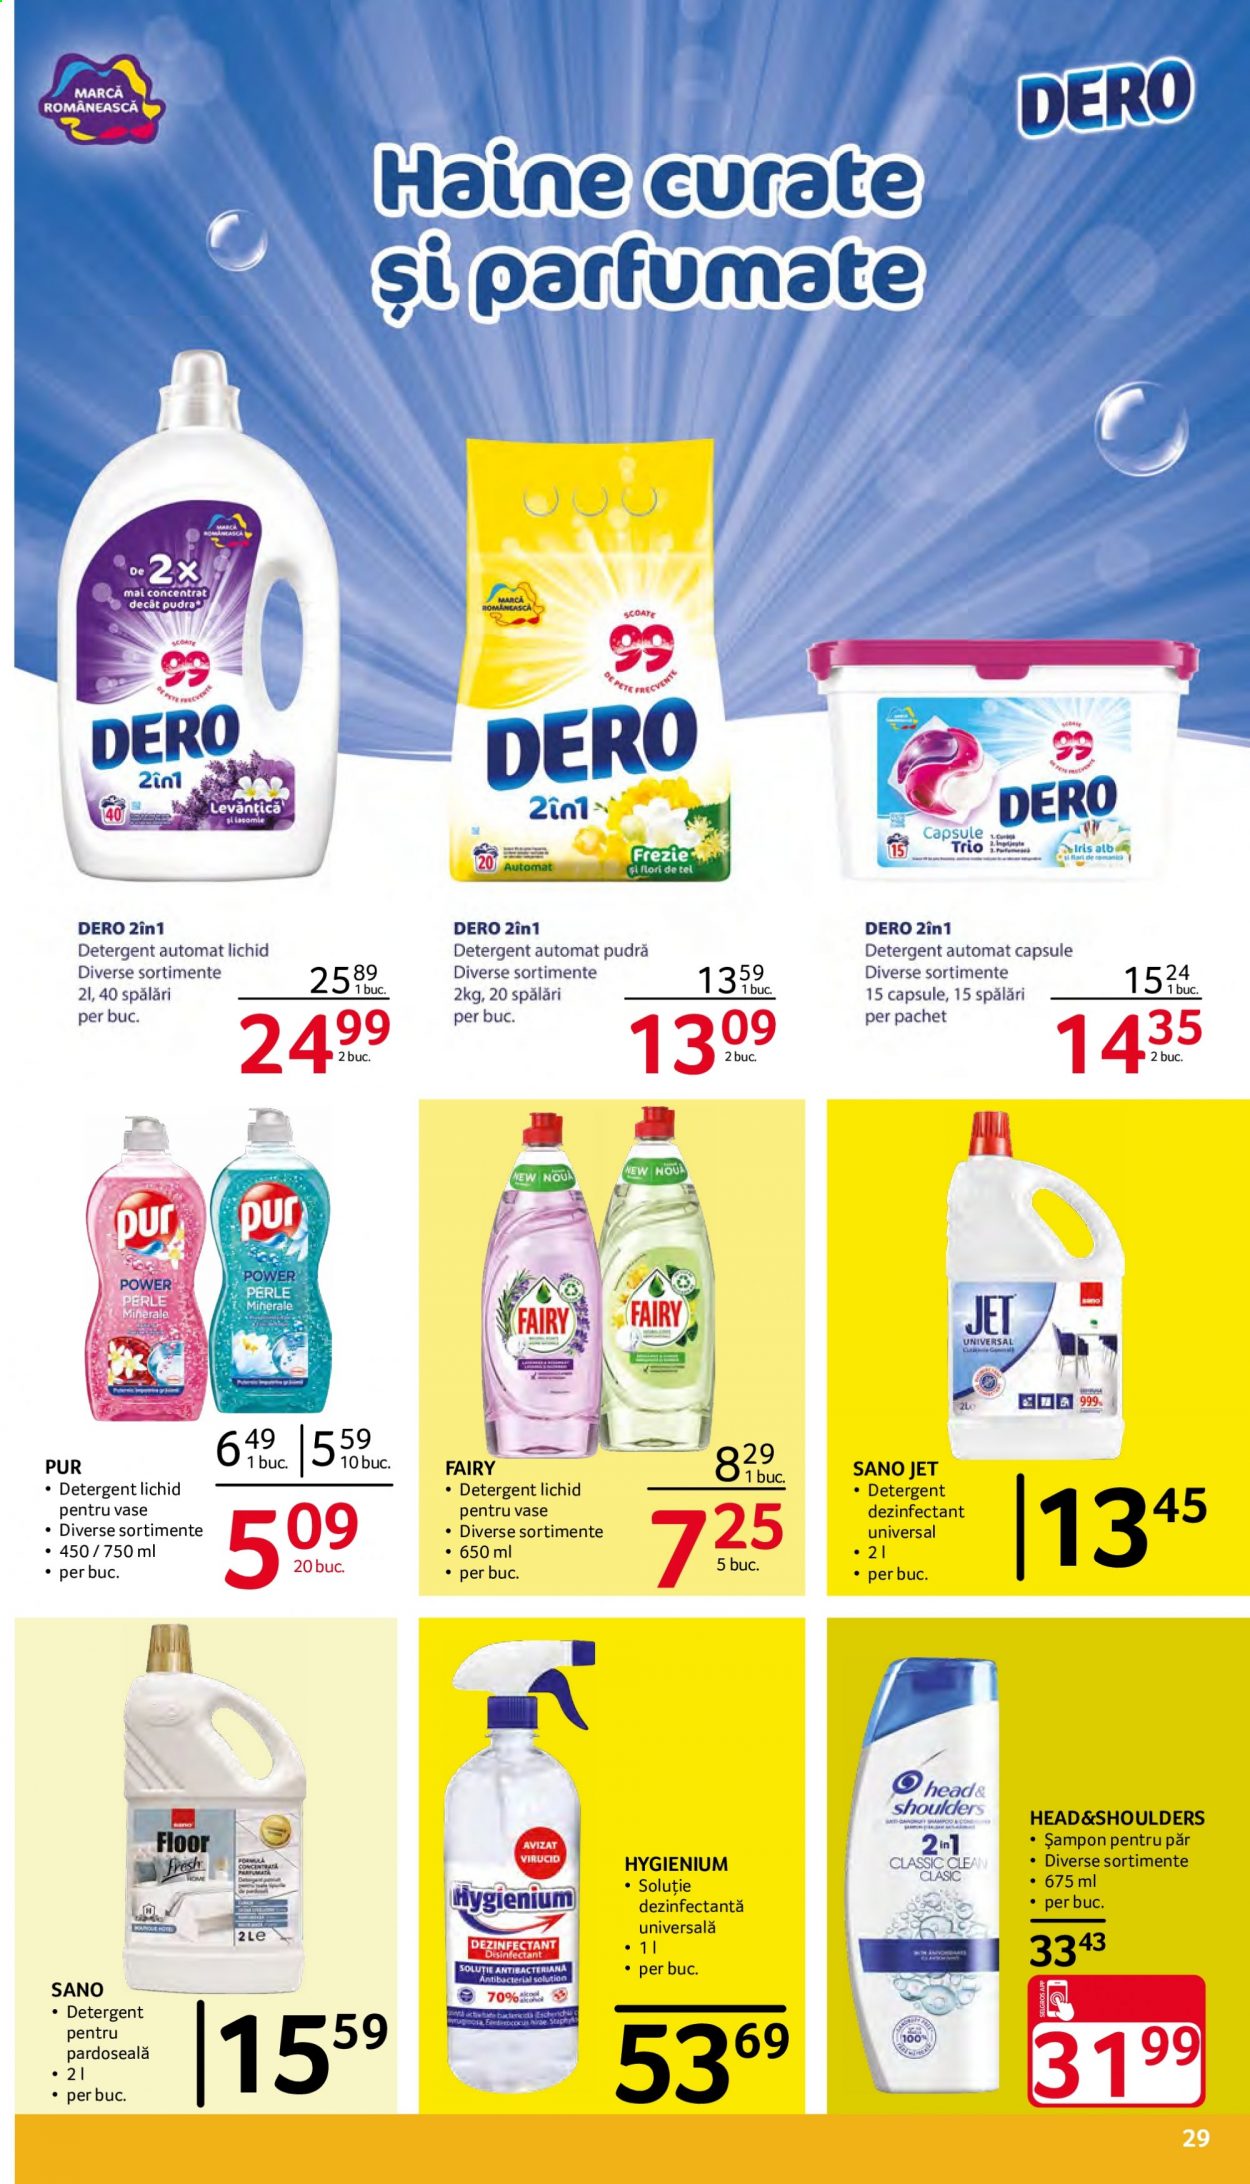 thumbnail - Cataloage Selgros - 02.04.2021 - 15.04.2021 - Produse în vânzare - detergent, Dero, detergent automat, detergent capsule, Fairy, Pur, șampon, Head & Shoulders, soluție antibacteriană, Head. Pagina 29.